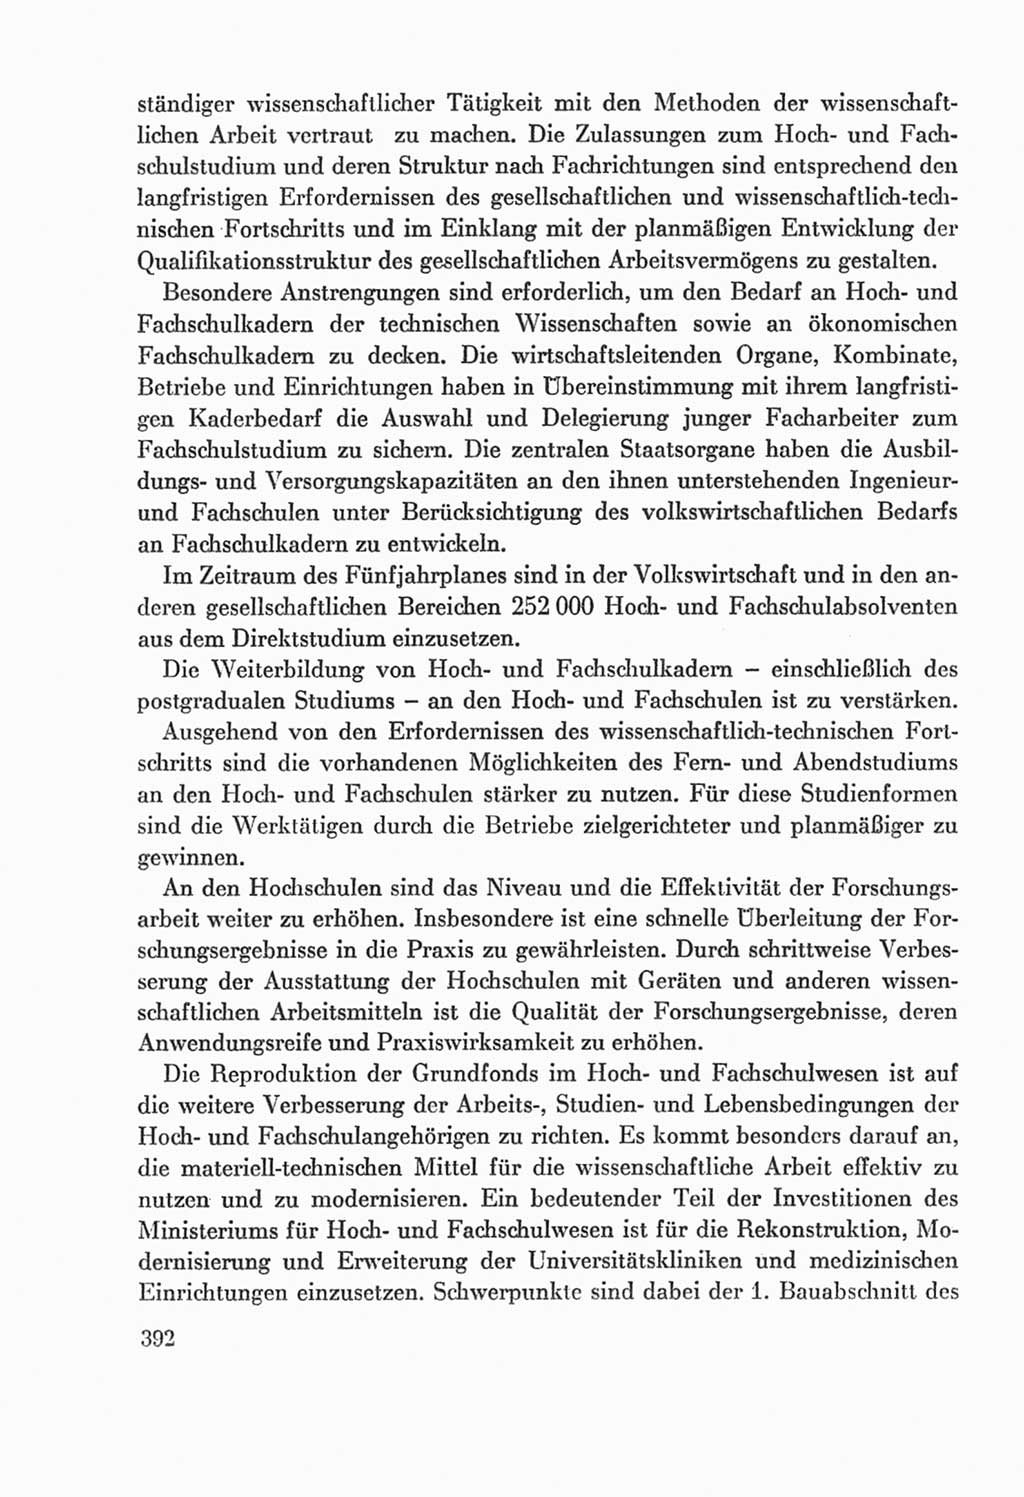 Protokoll der Verhandlungen des Ⅸ. Parteitages der Sozialistischen Einheitspartei Deutschlands (SED) [Deutsche Demokratische Republik (DDR)] 1976, Band 2, Seite 392 (Prot. Verh. Ⅸ. PT SED DDR 1976, Bd. 2, S. 392)